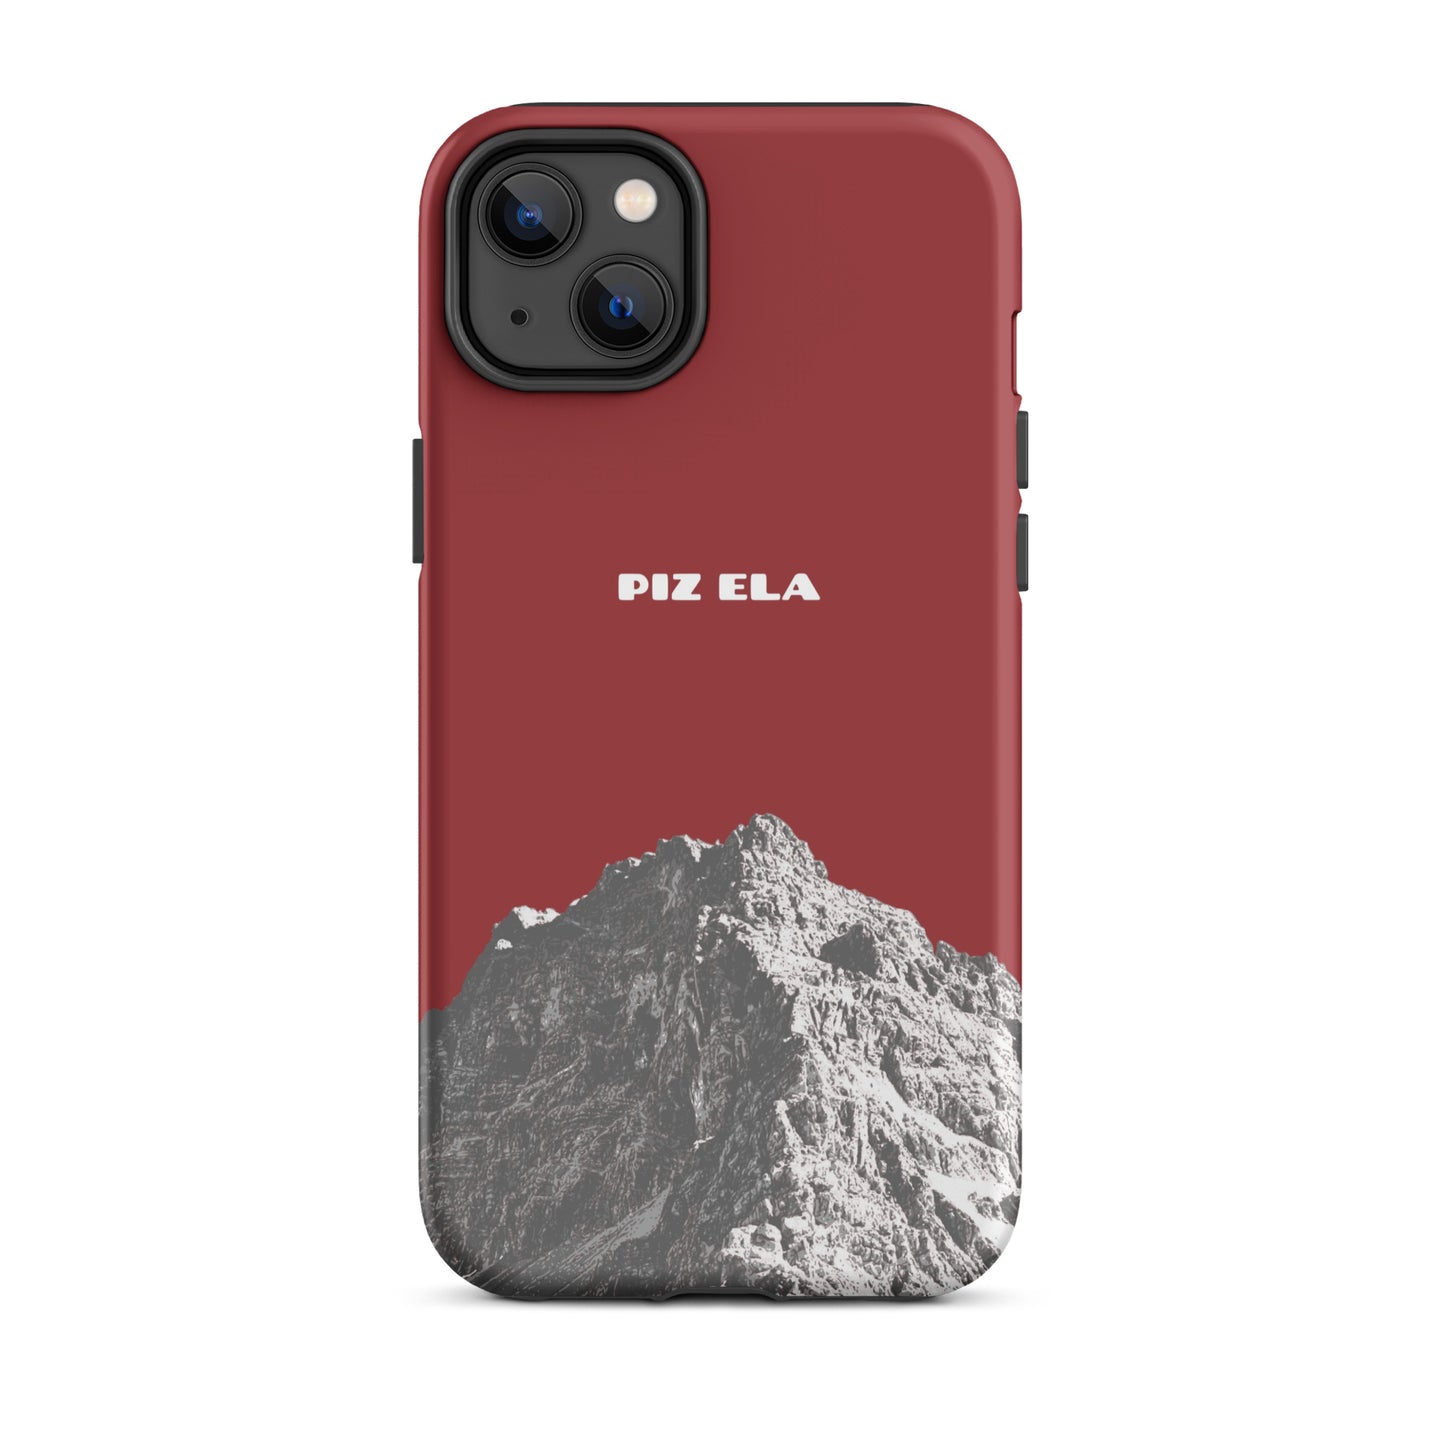 iPhone Case - Piz Ela - Rot